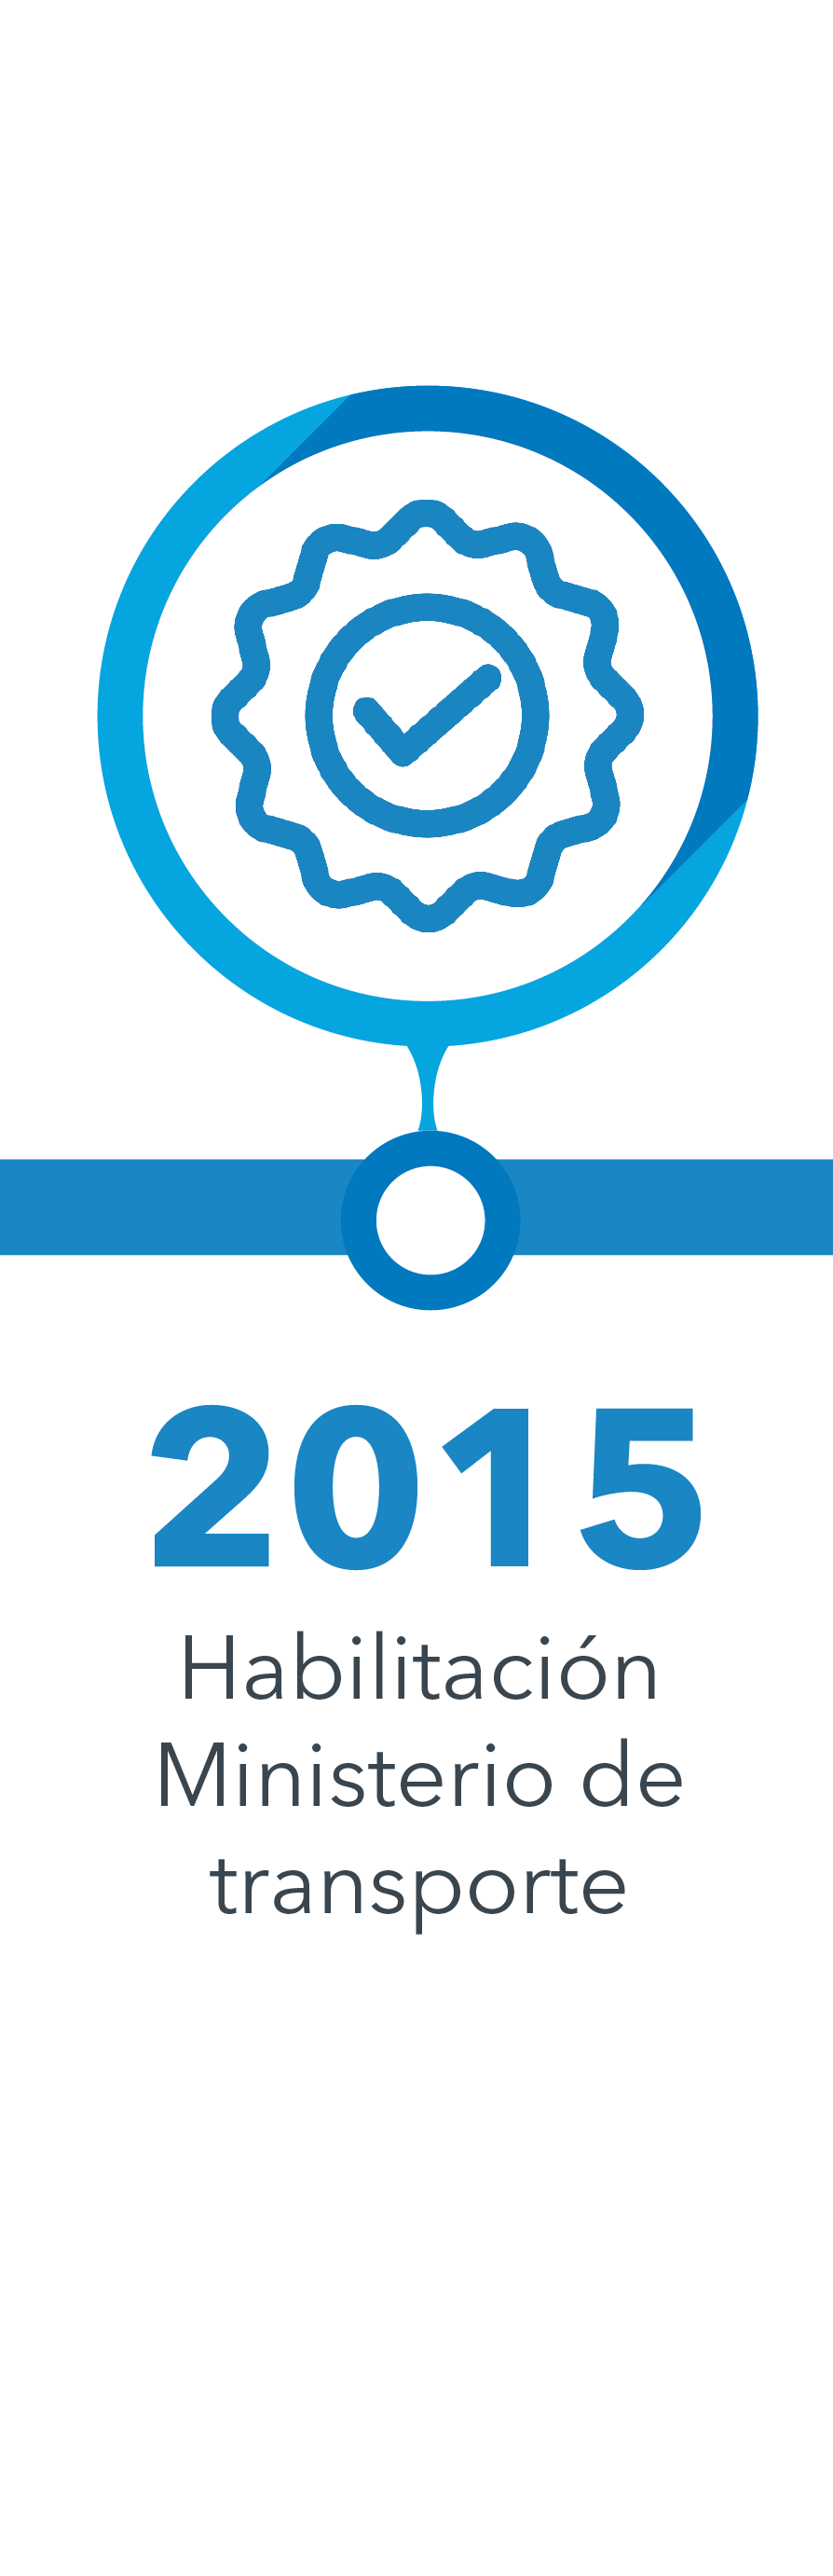 Año 2015 - Certificación de transporte